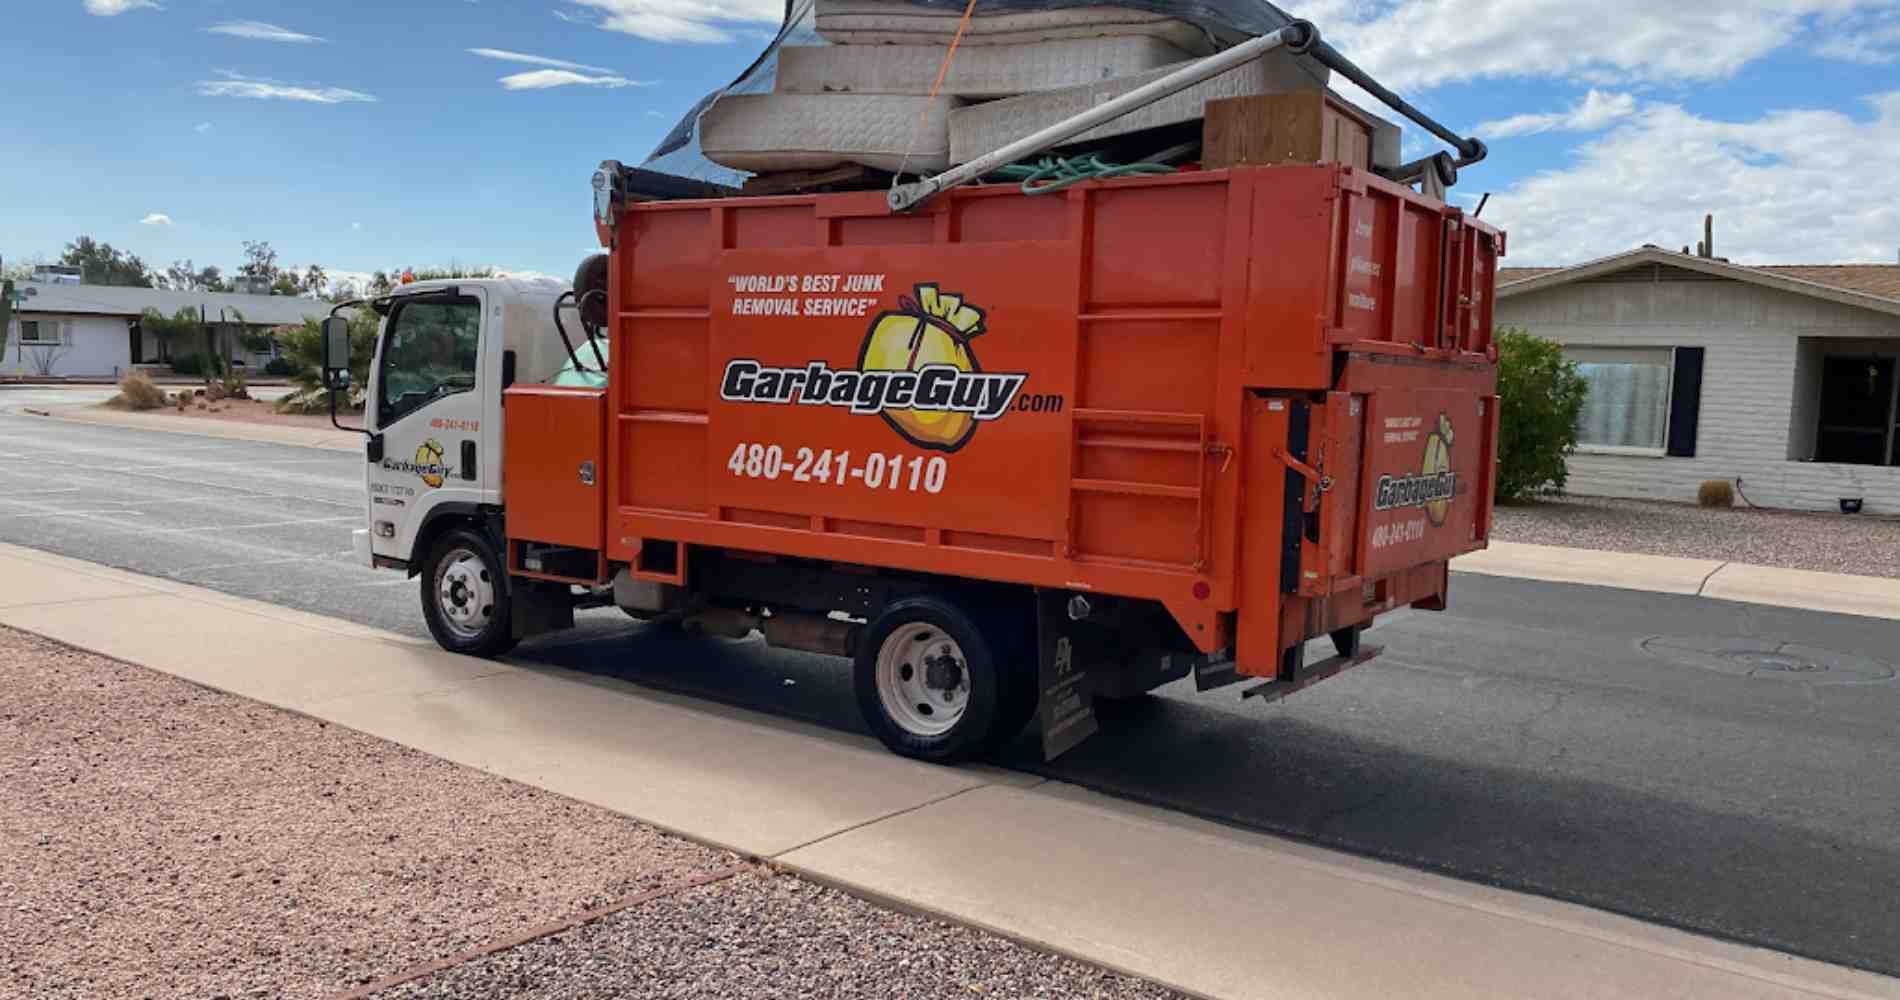 Curbside Trash Pickup in Scottsdale, AZ